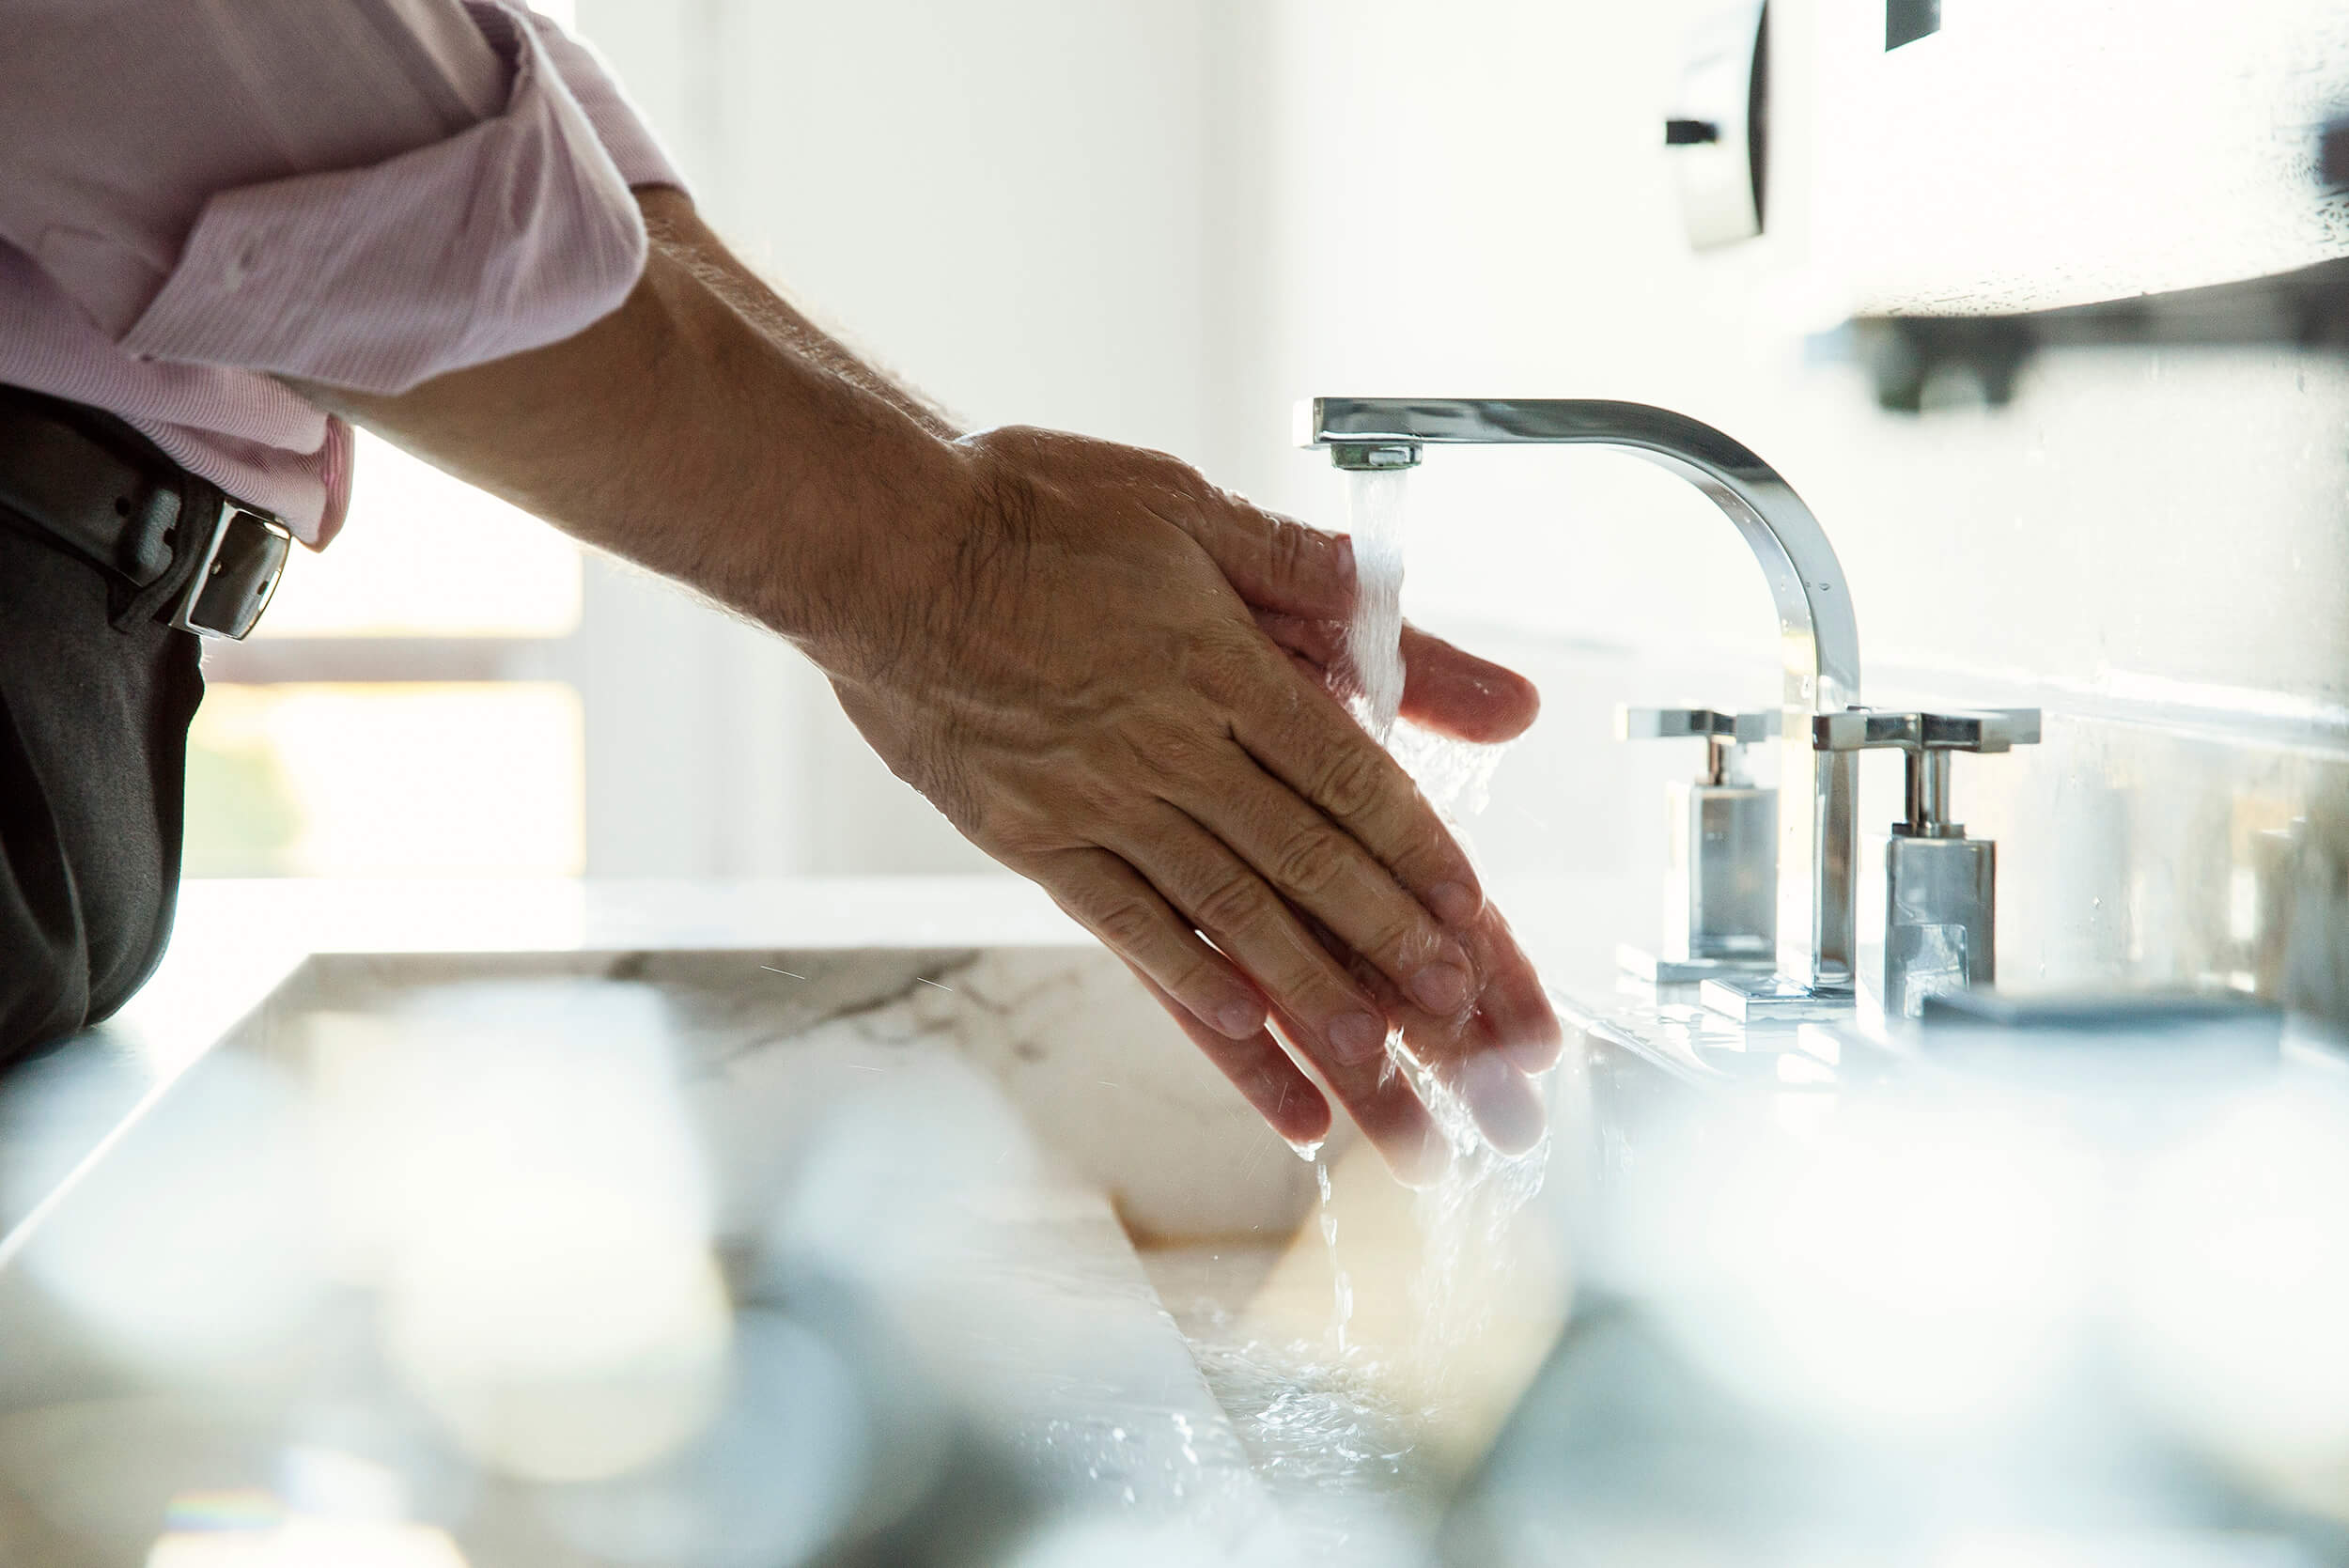 Mencuci tangan dengan sabun dapat membunuh kuman.